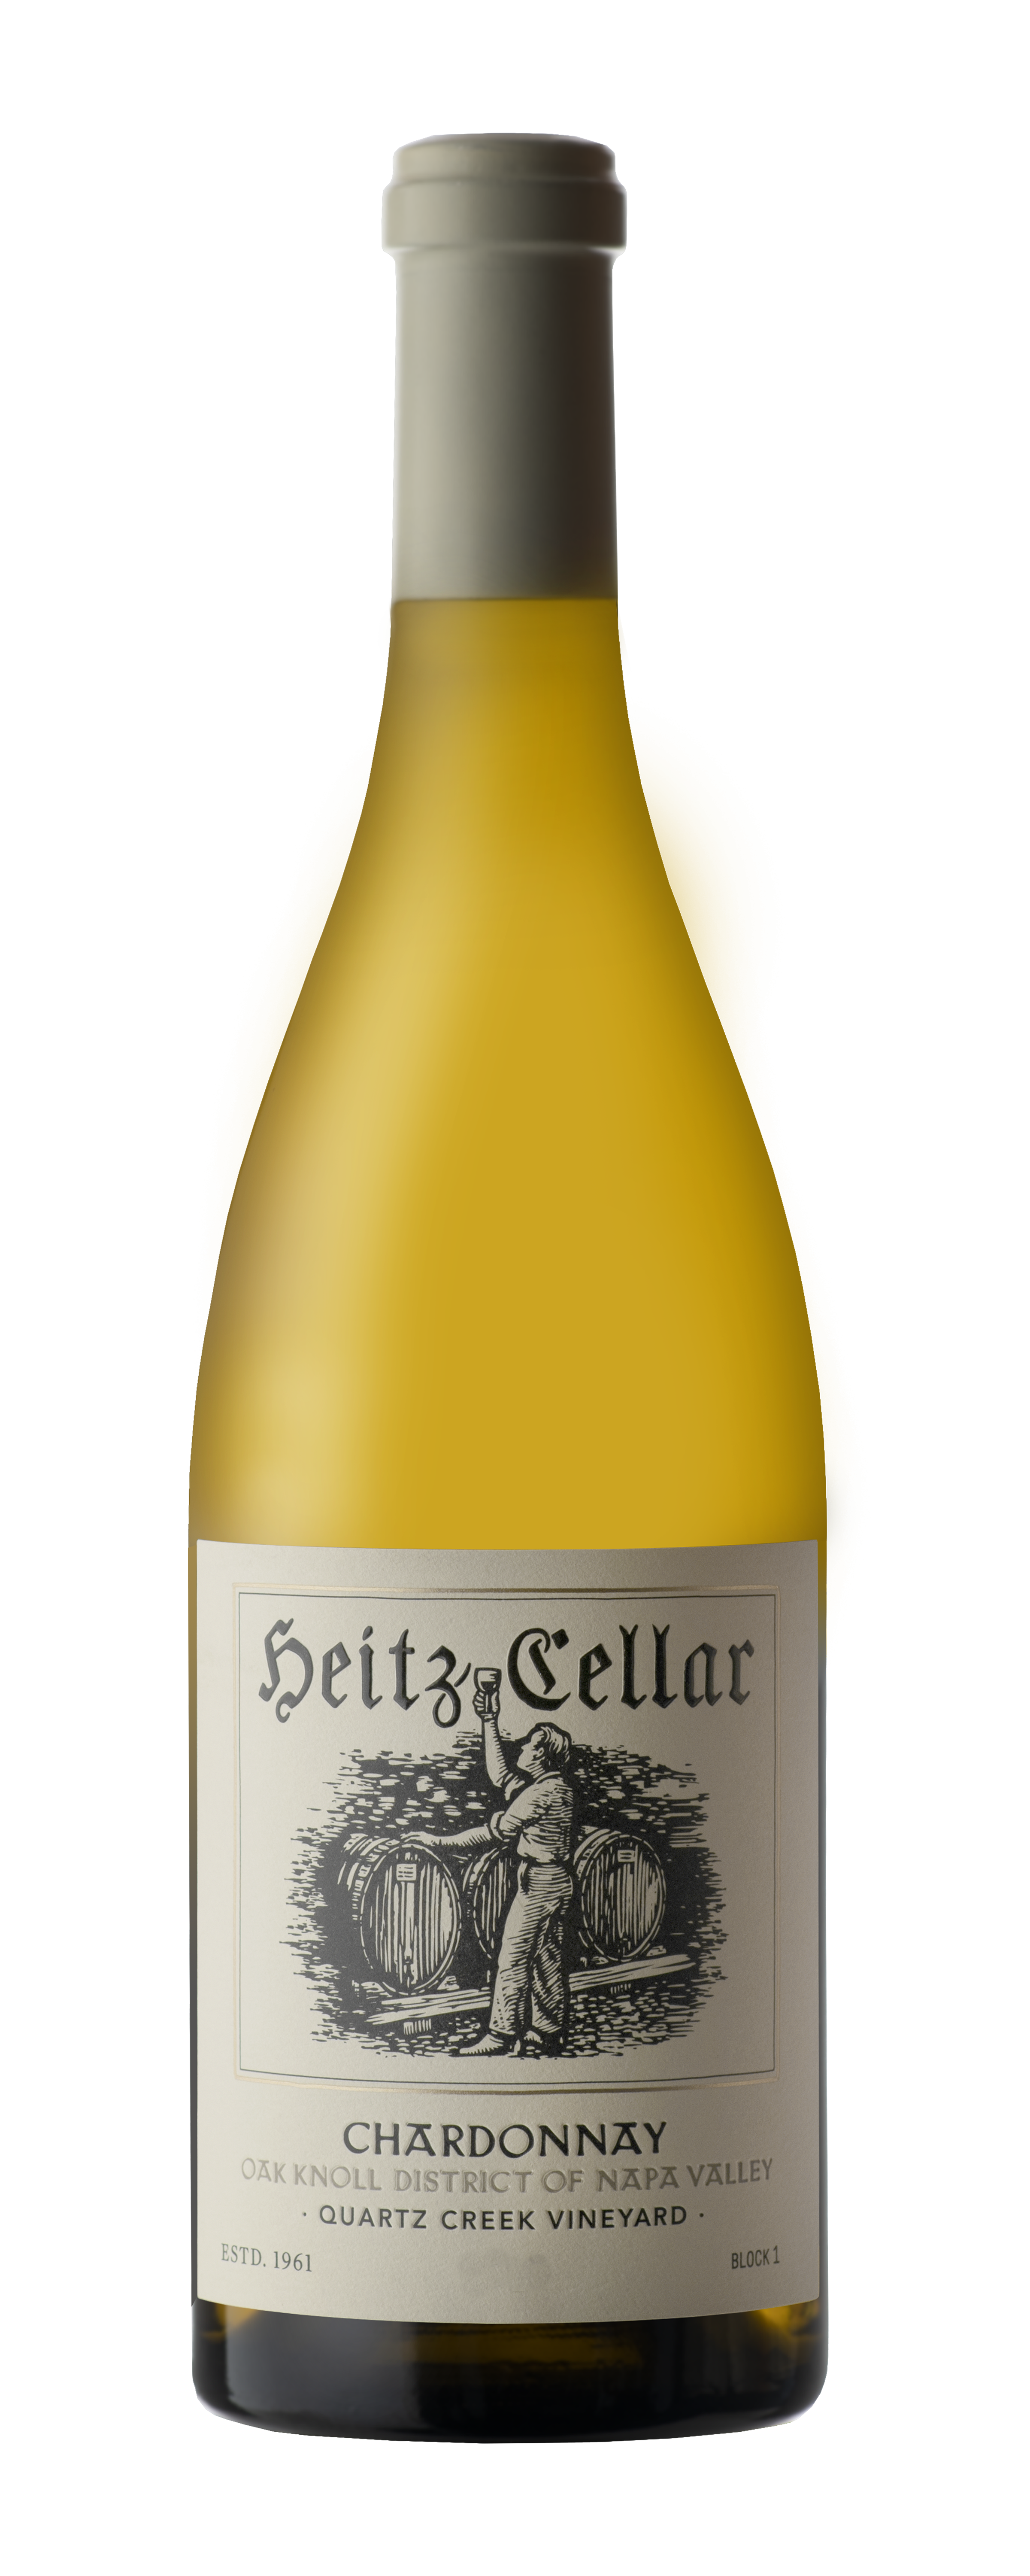 Bottle of Heitz Cellar Quartz Creek Vineyard Oak Knoll Chardonnay